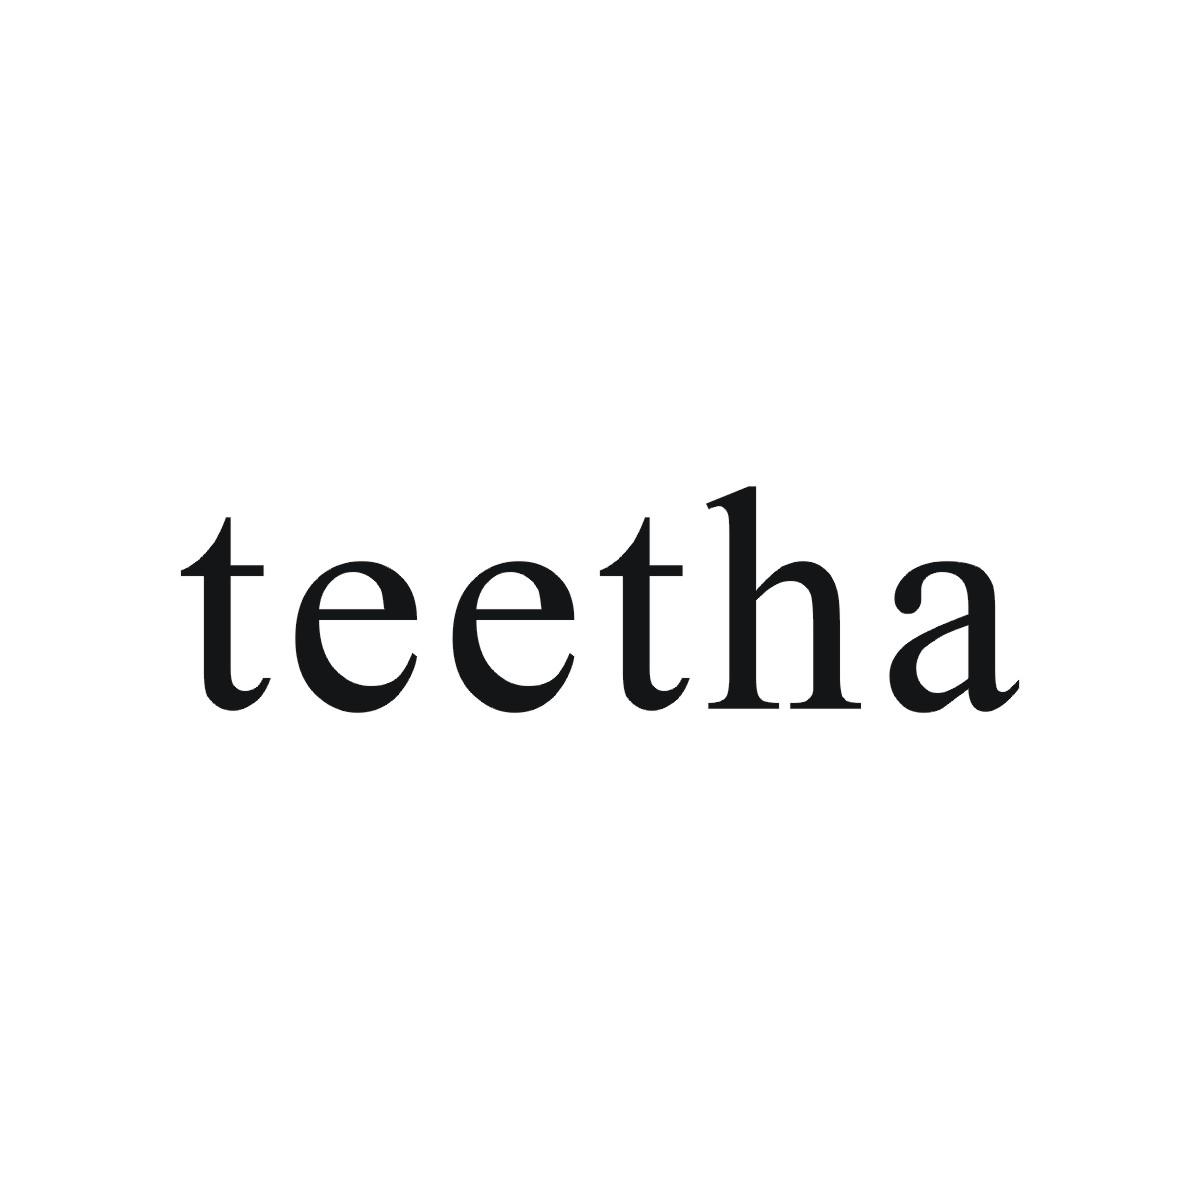 TEETHA